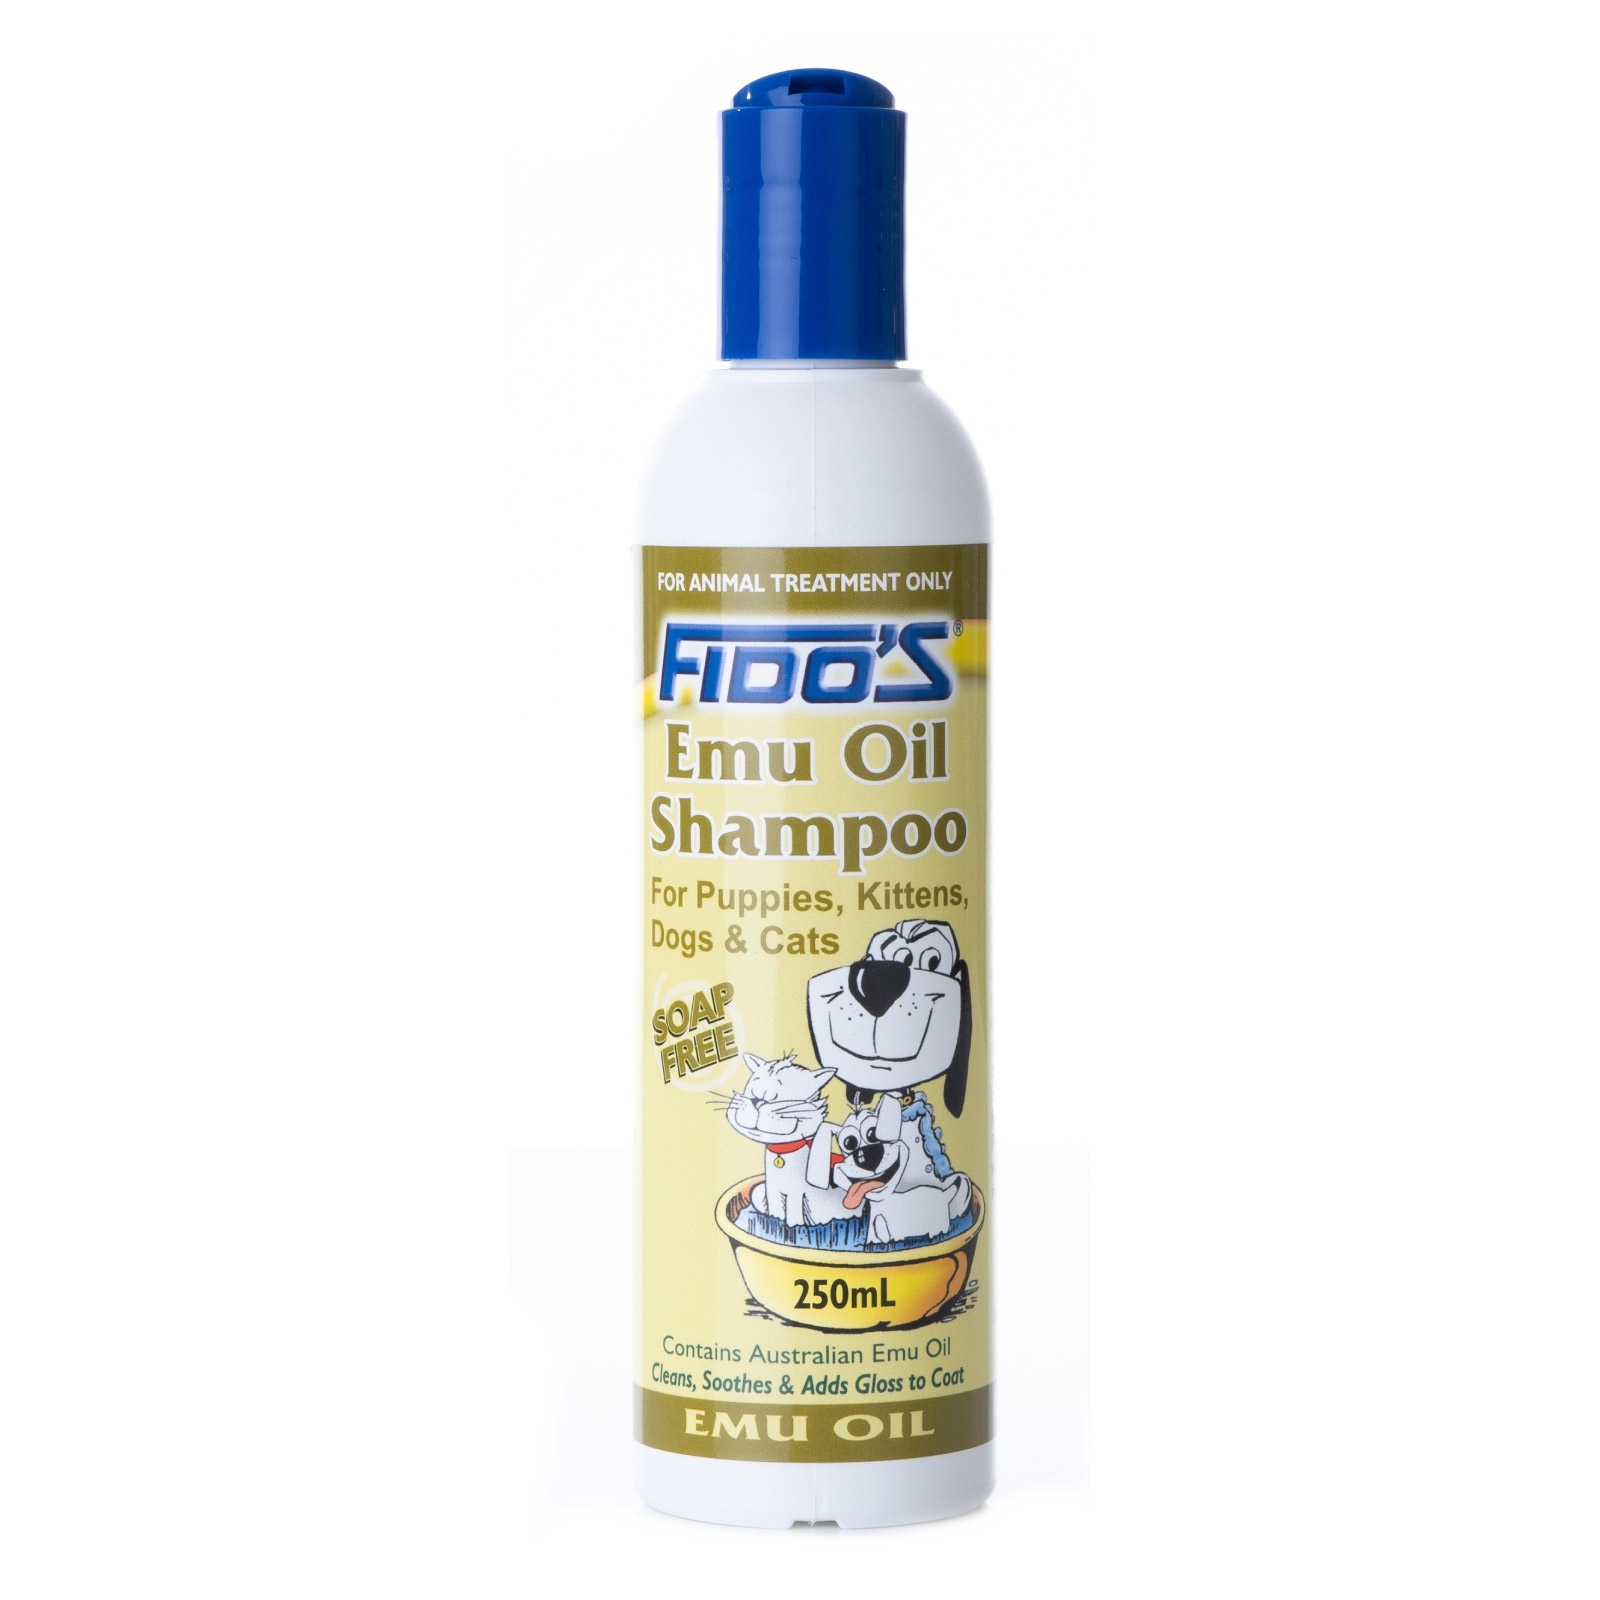 Fido's Emu Oil Shampoo for Dogs